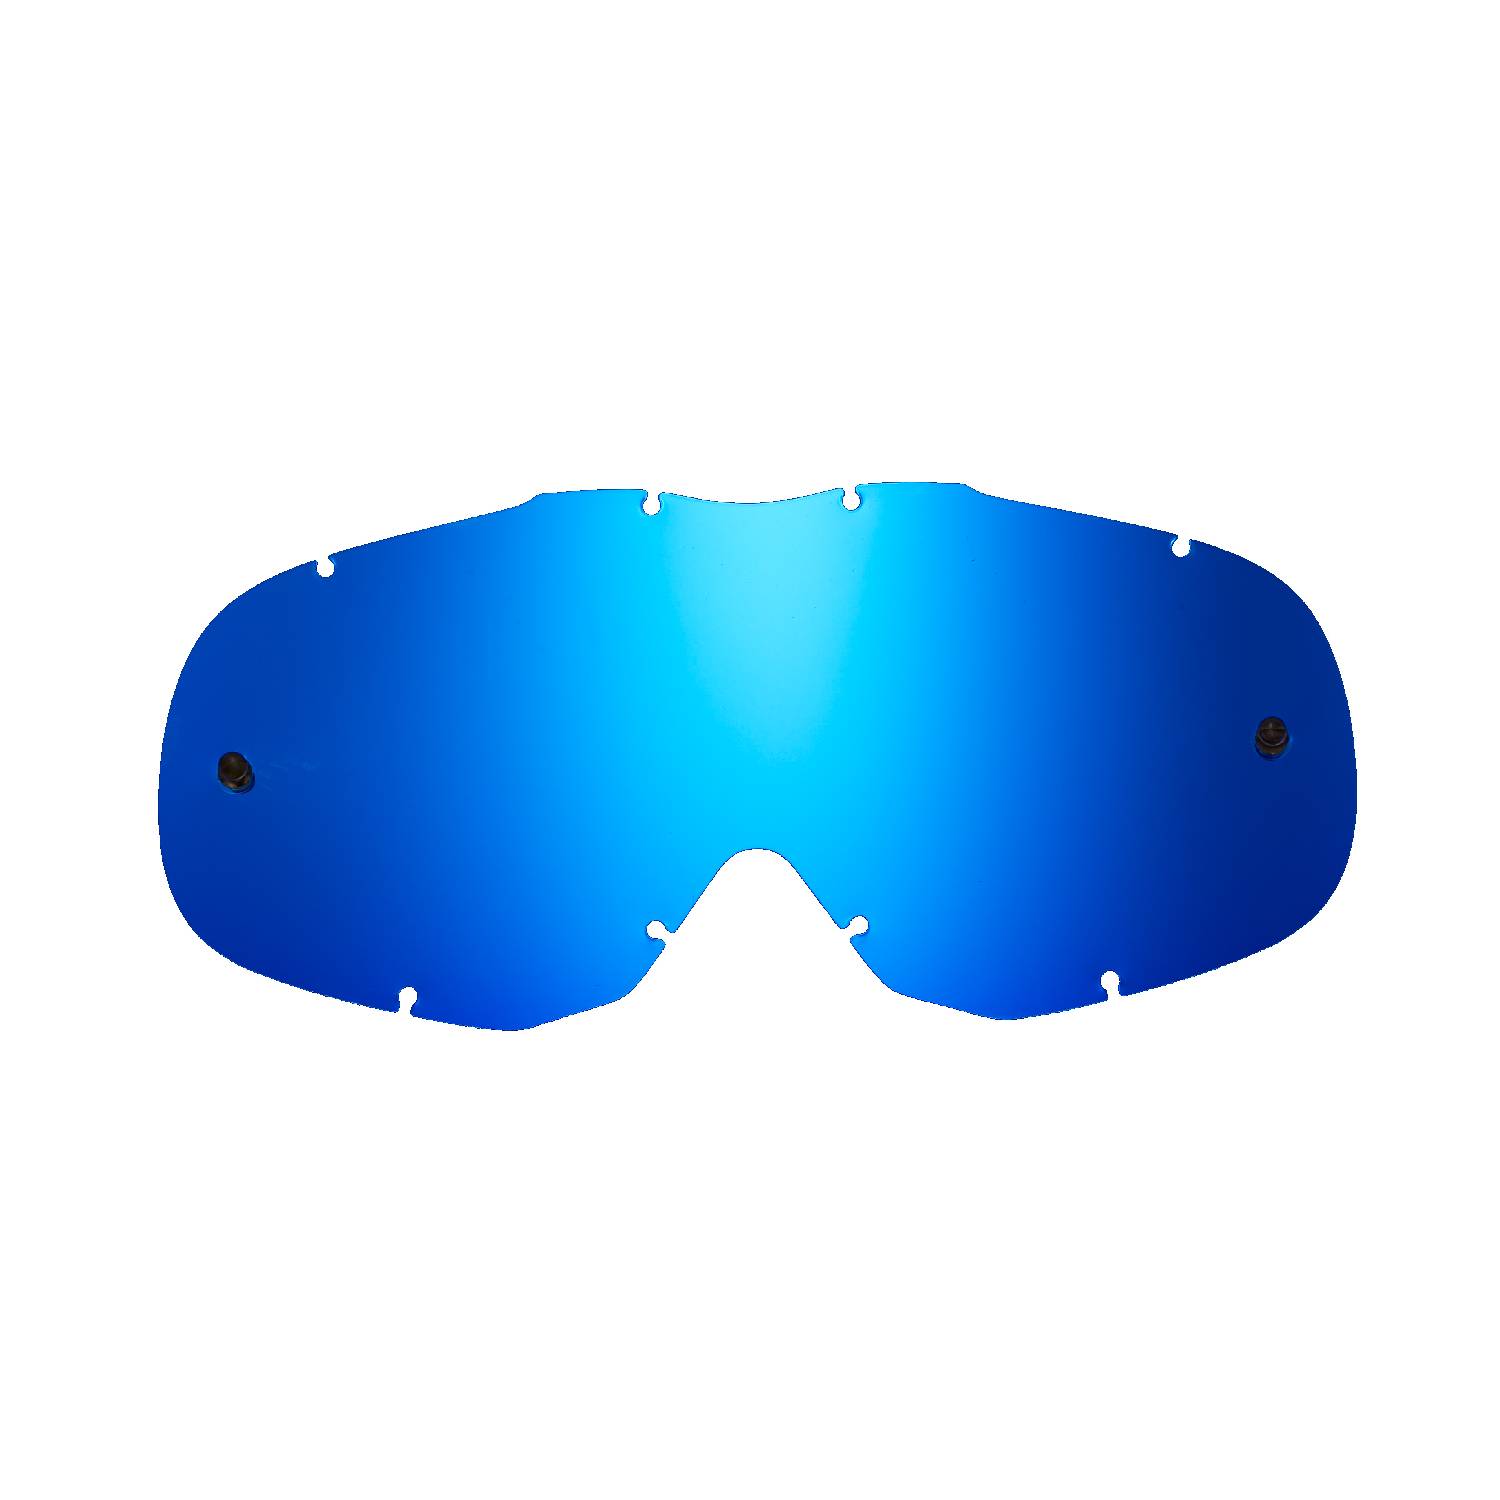 Lente di ricambio blu specchiato compatibile per occhiale/maschera Thor Ally